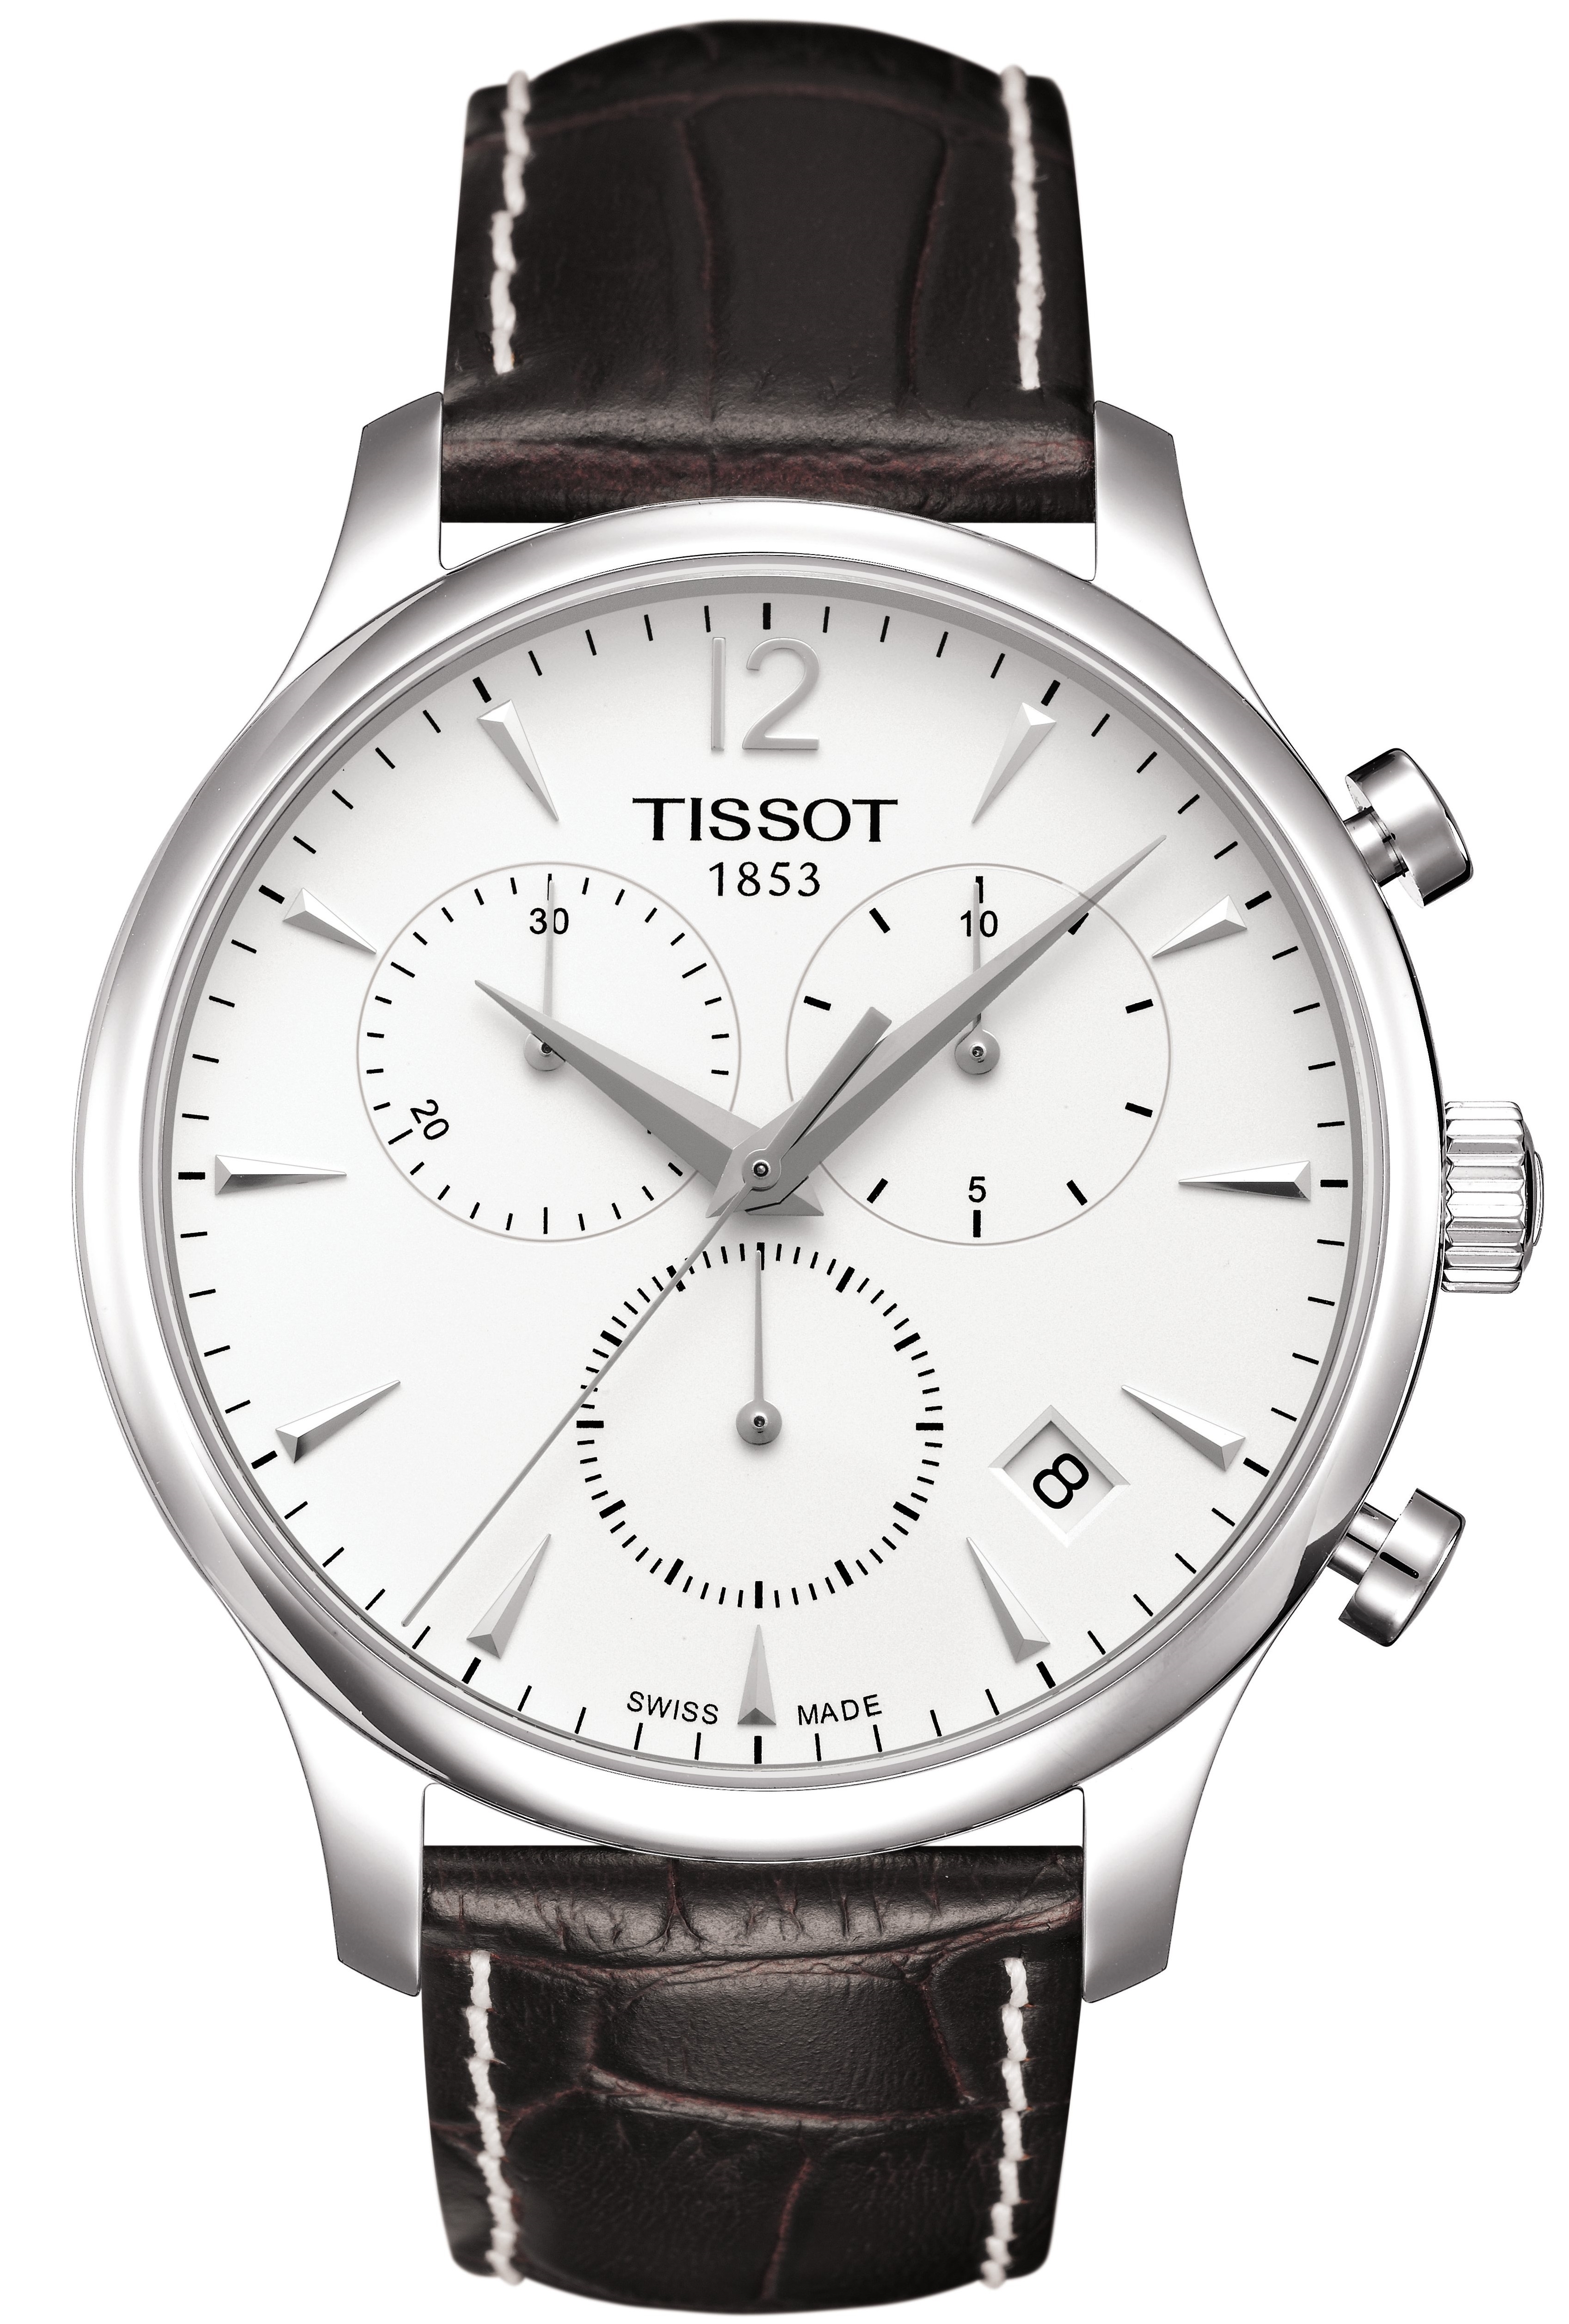 Швейцарские наручные часы тиссот. Наручные часы Tissot t063.617.16.037.00. Tissot t0636171603700. Tissot tradition Chronograph t063.617.16.037.00. Наручные часы Tissot t063.637.16.037.00.